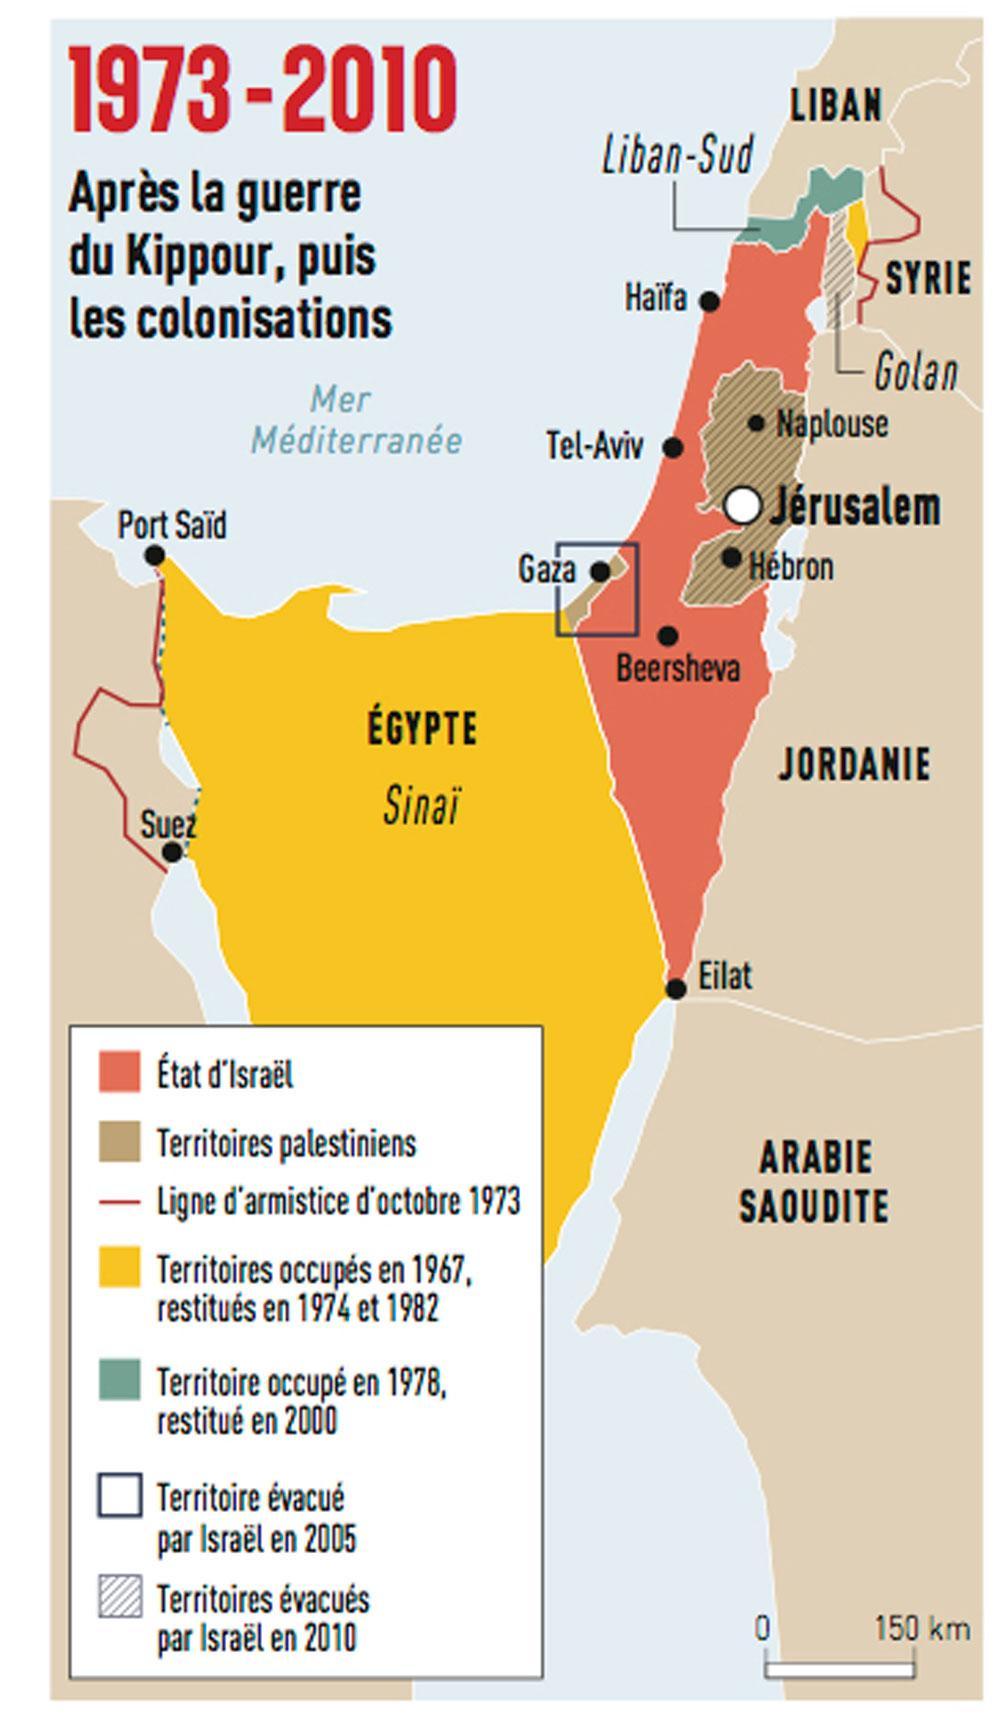 La guerre du Kippour, lancée le 6 octobre 1973 par les Arabes, provoque un véritable séisme en Israël : le mythe de l'invincibilité de l'Etat hébreu et de son armée s'effondre. En janvier 1974 est signé, au kilomètre 101, sur la route de Suez au Caire, un accord de désengagement entre Israël et l'Egypte. Mais la bataille des frontières est loin d'être finie. Elle se poursuit sur le plan militaire, et aussi civil avec la politique d'implantation de colonies juives au coeur des territoires palestiniens. Aujourd'hui, Israël compte 8,5 millions d'habitants, dont plus de 20% d'Arabes.